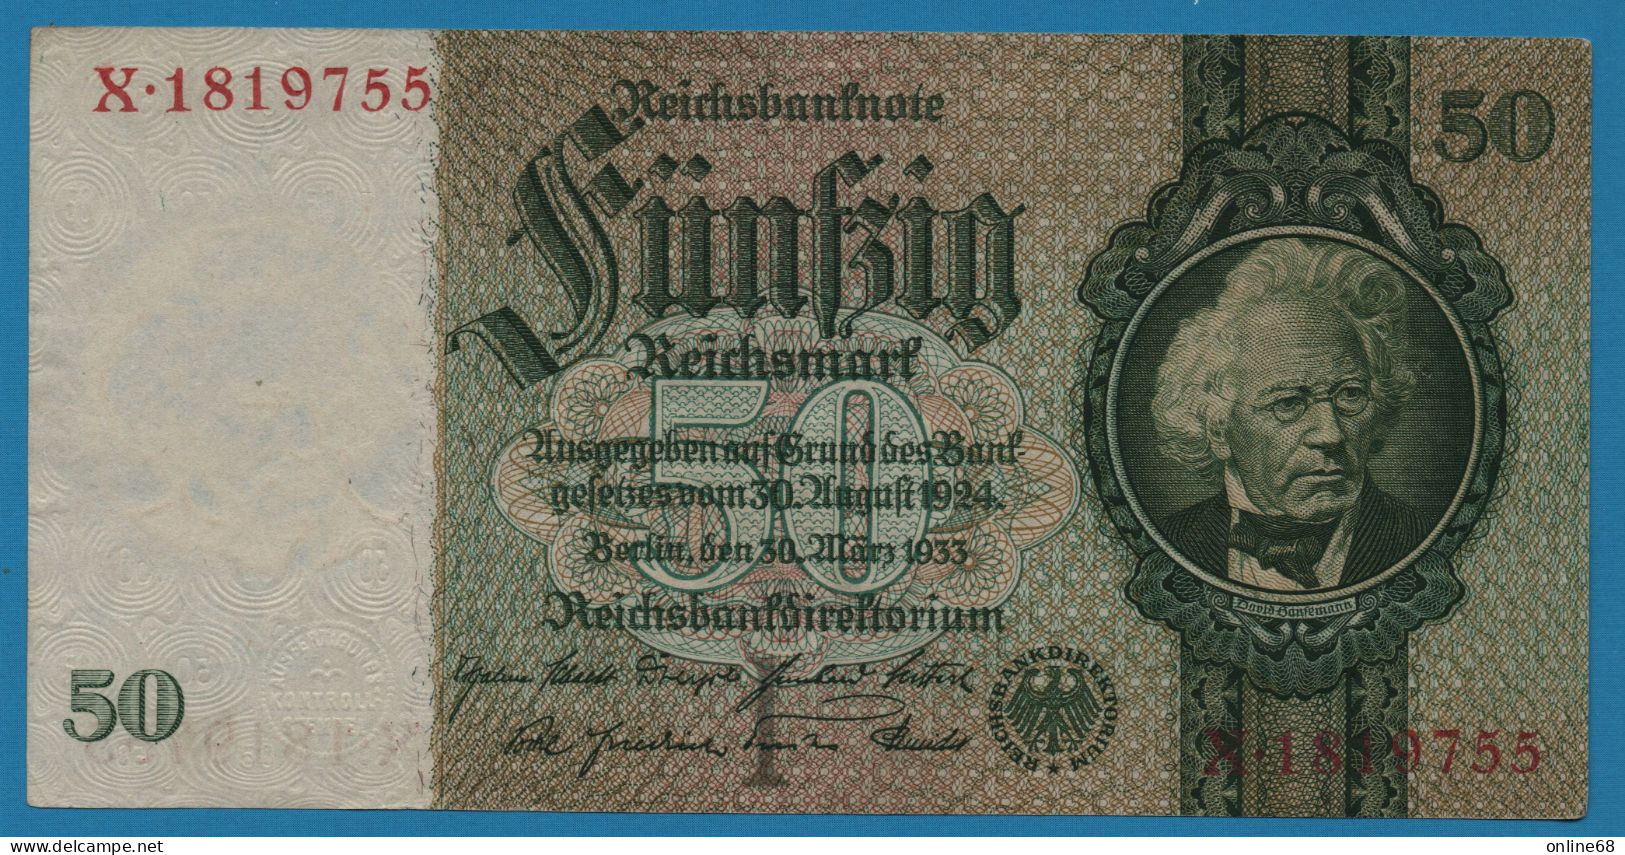 DEUTSCHES REICH 50 REICHSMARK 30.03.1933 LETTER I # X.1819755 P# 182a  David Hansemann - 50 Reichsmark